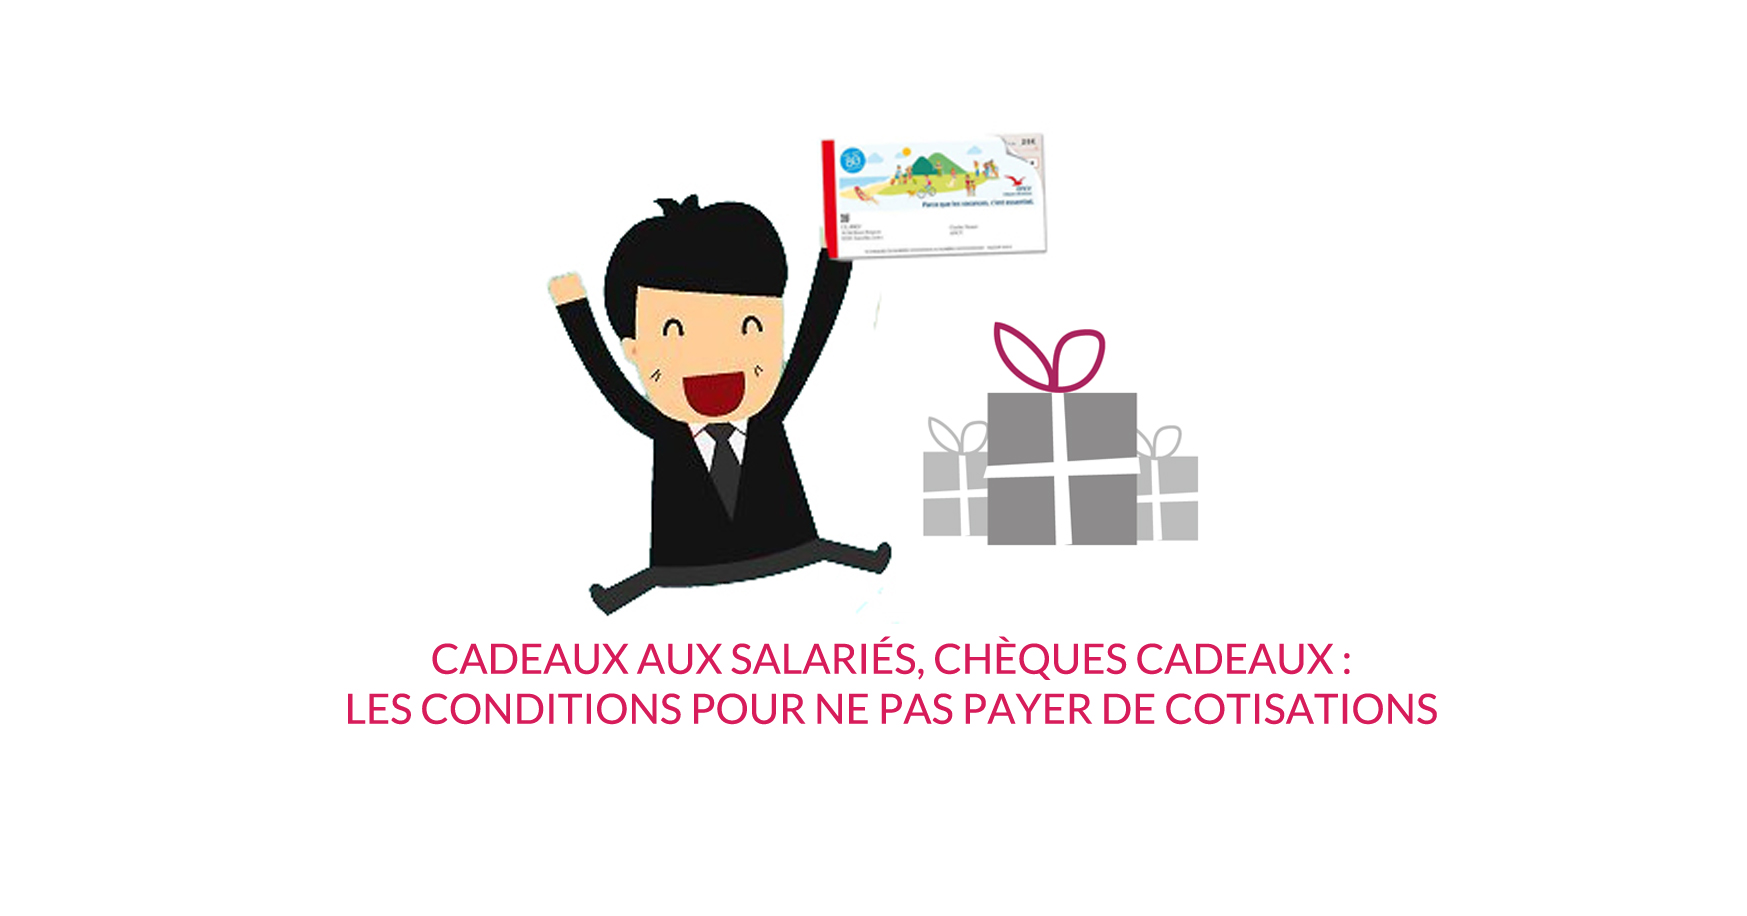 You are currently viewing Cadeaux aux salariés, chèques cadeaux : les conditions pour ne pas payer de cotisations